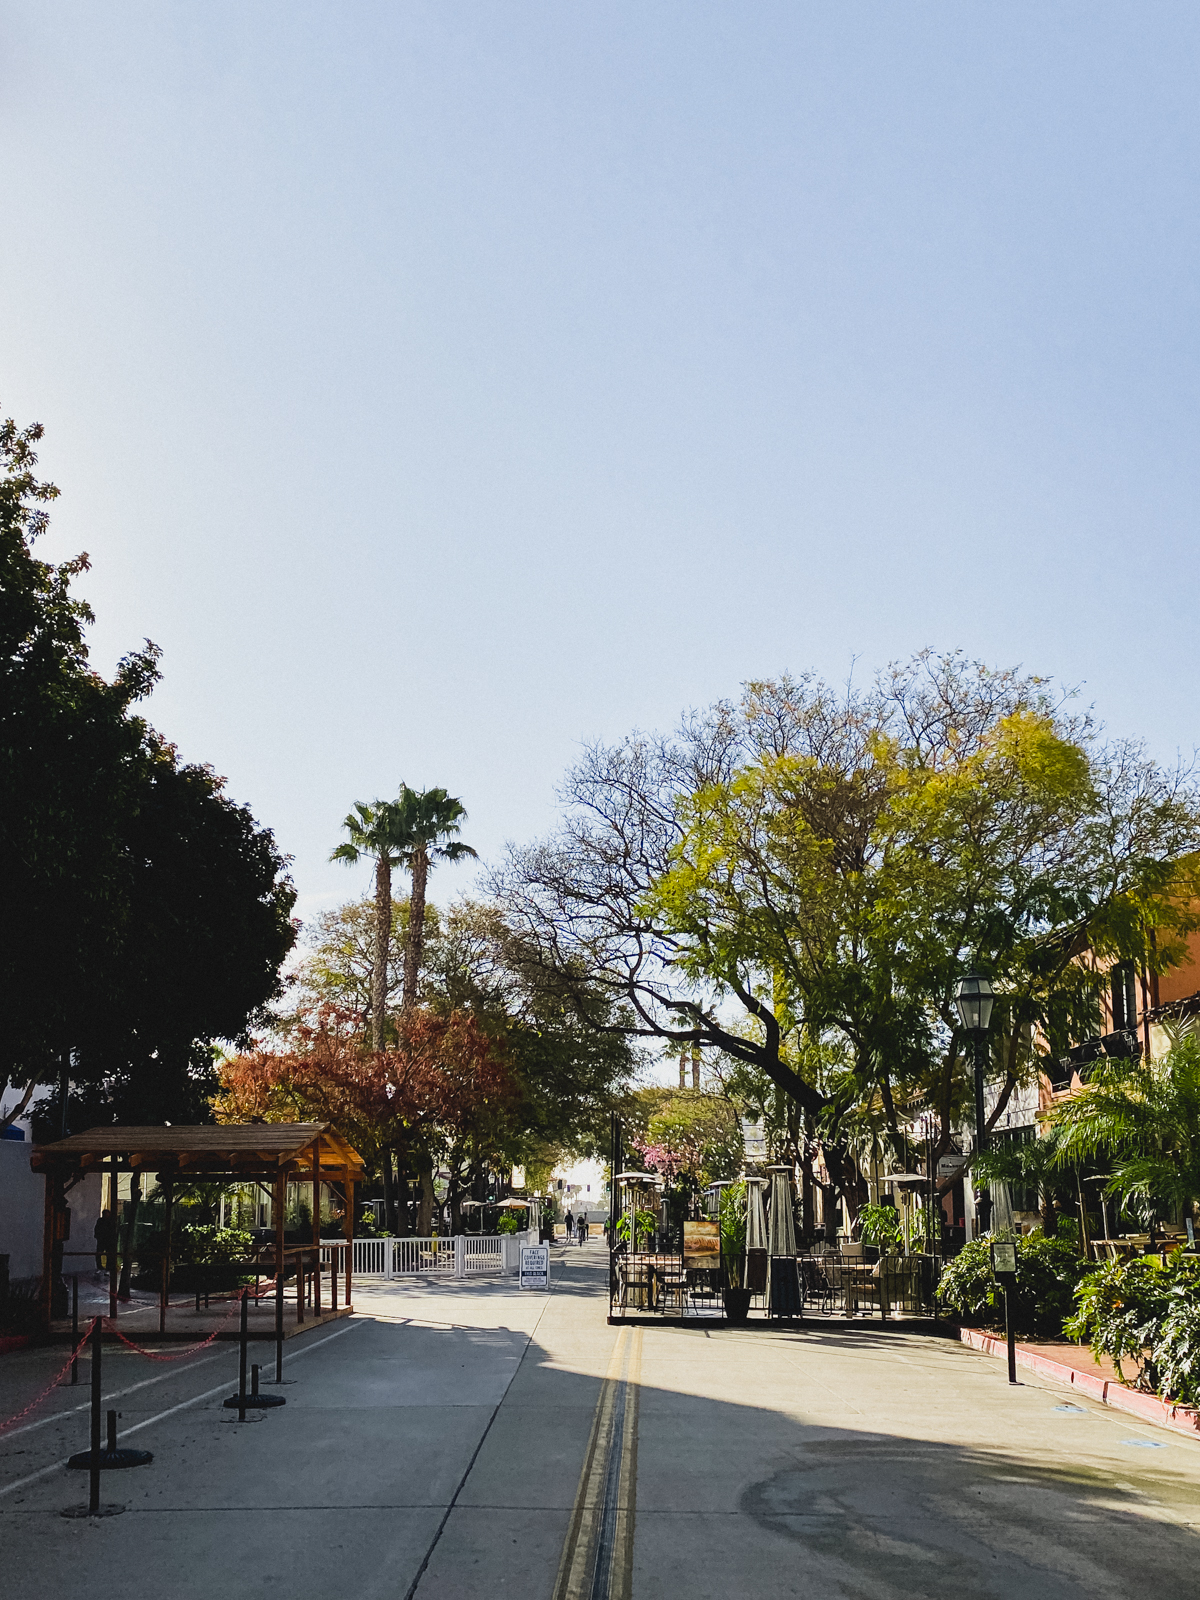 State Street in Santa Barbara